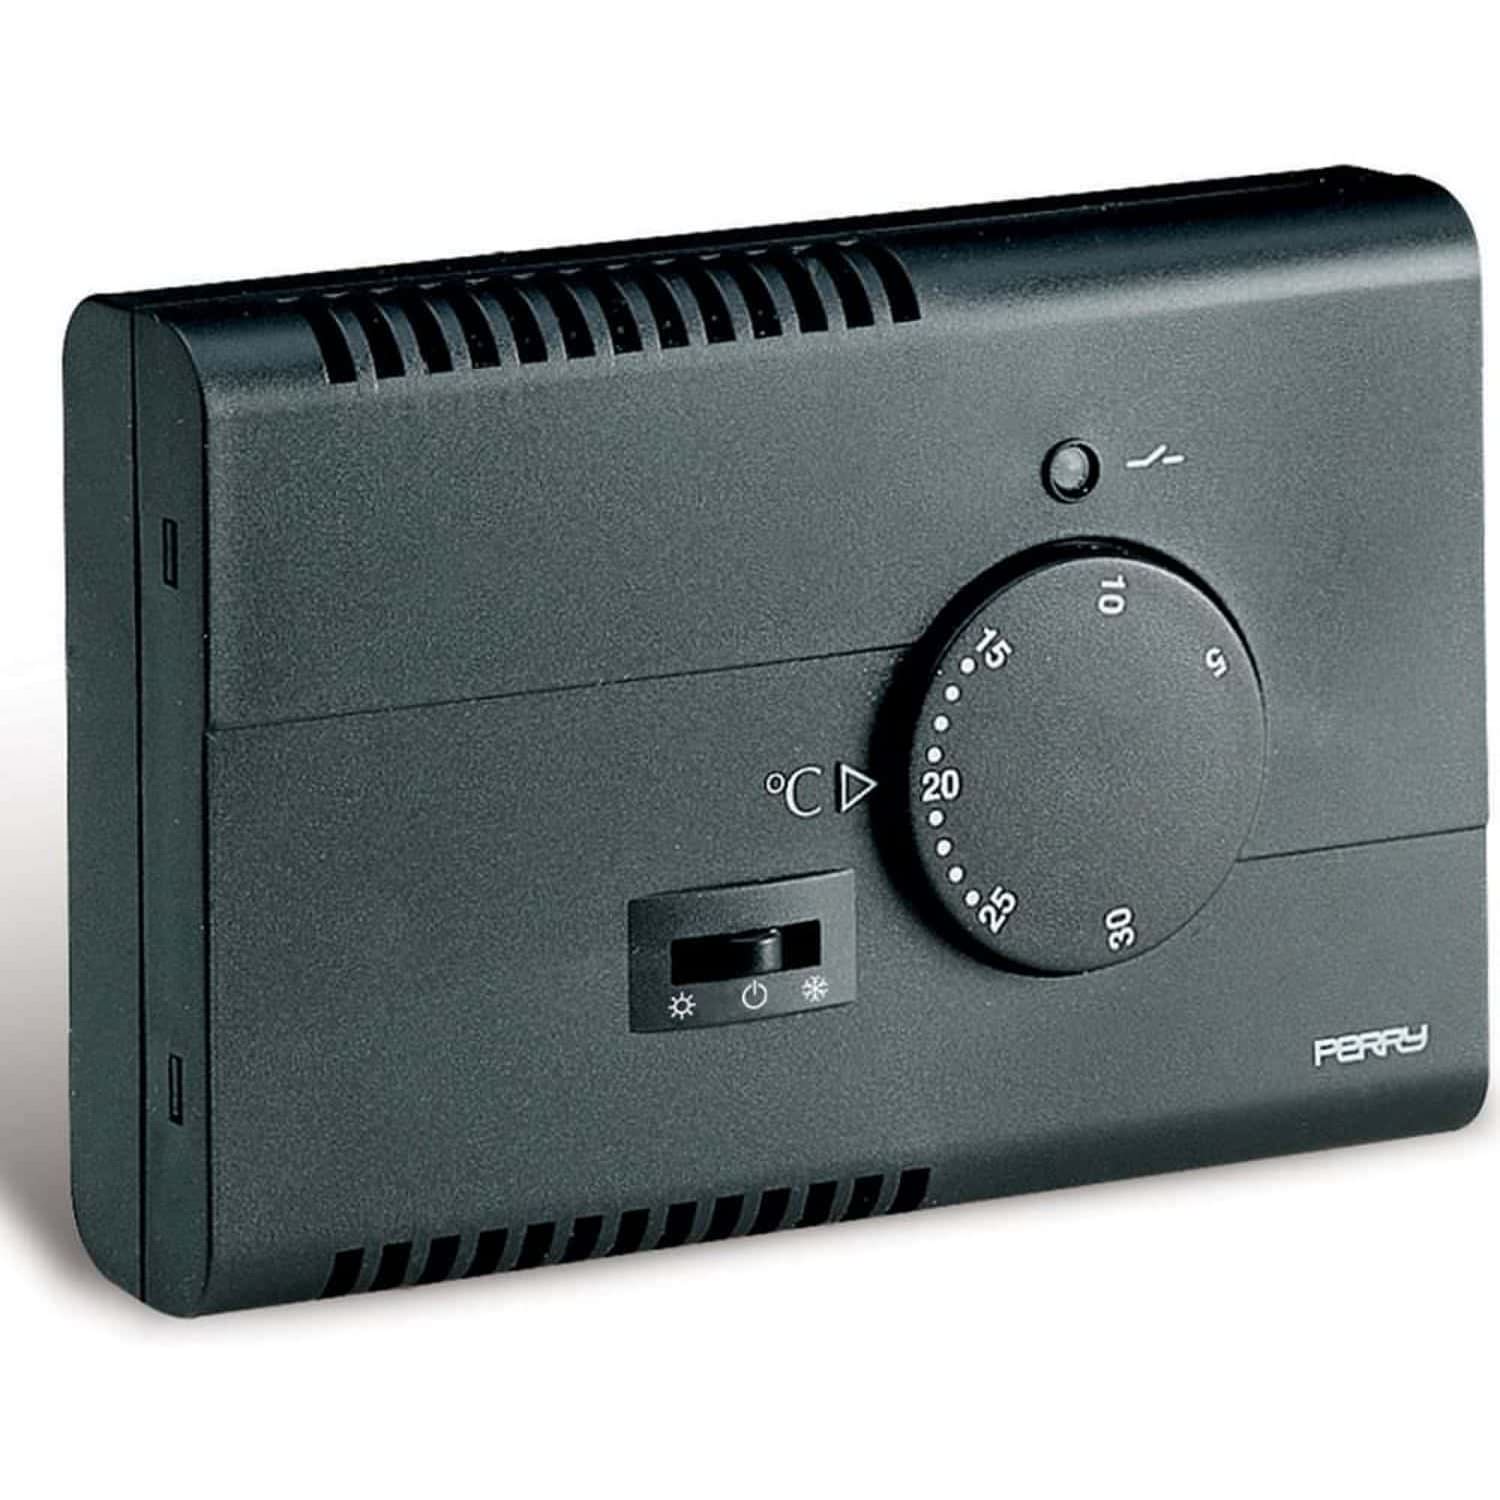 Thermostat für elektronische Wand schwar